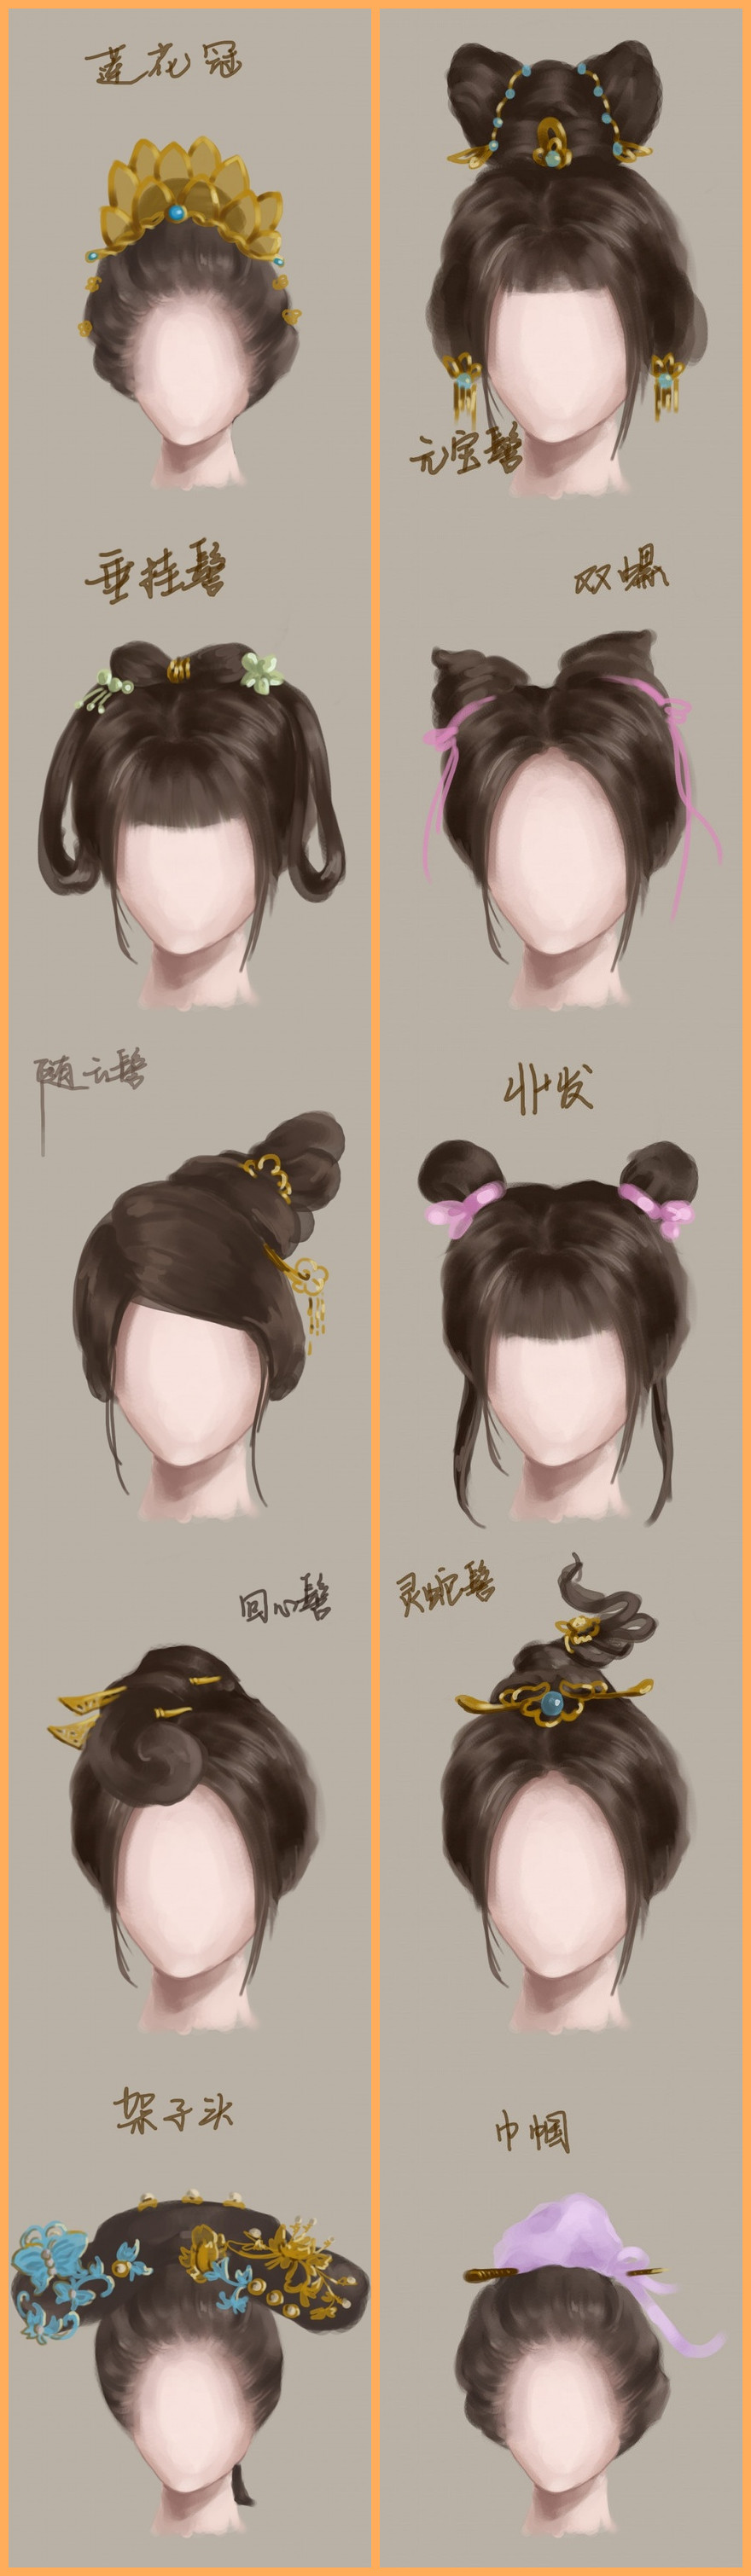 图解中国古代女子发型3